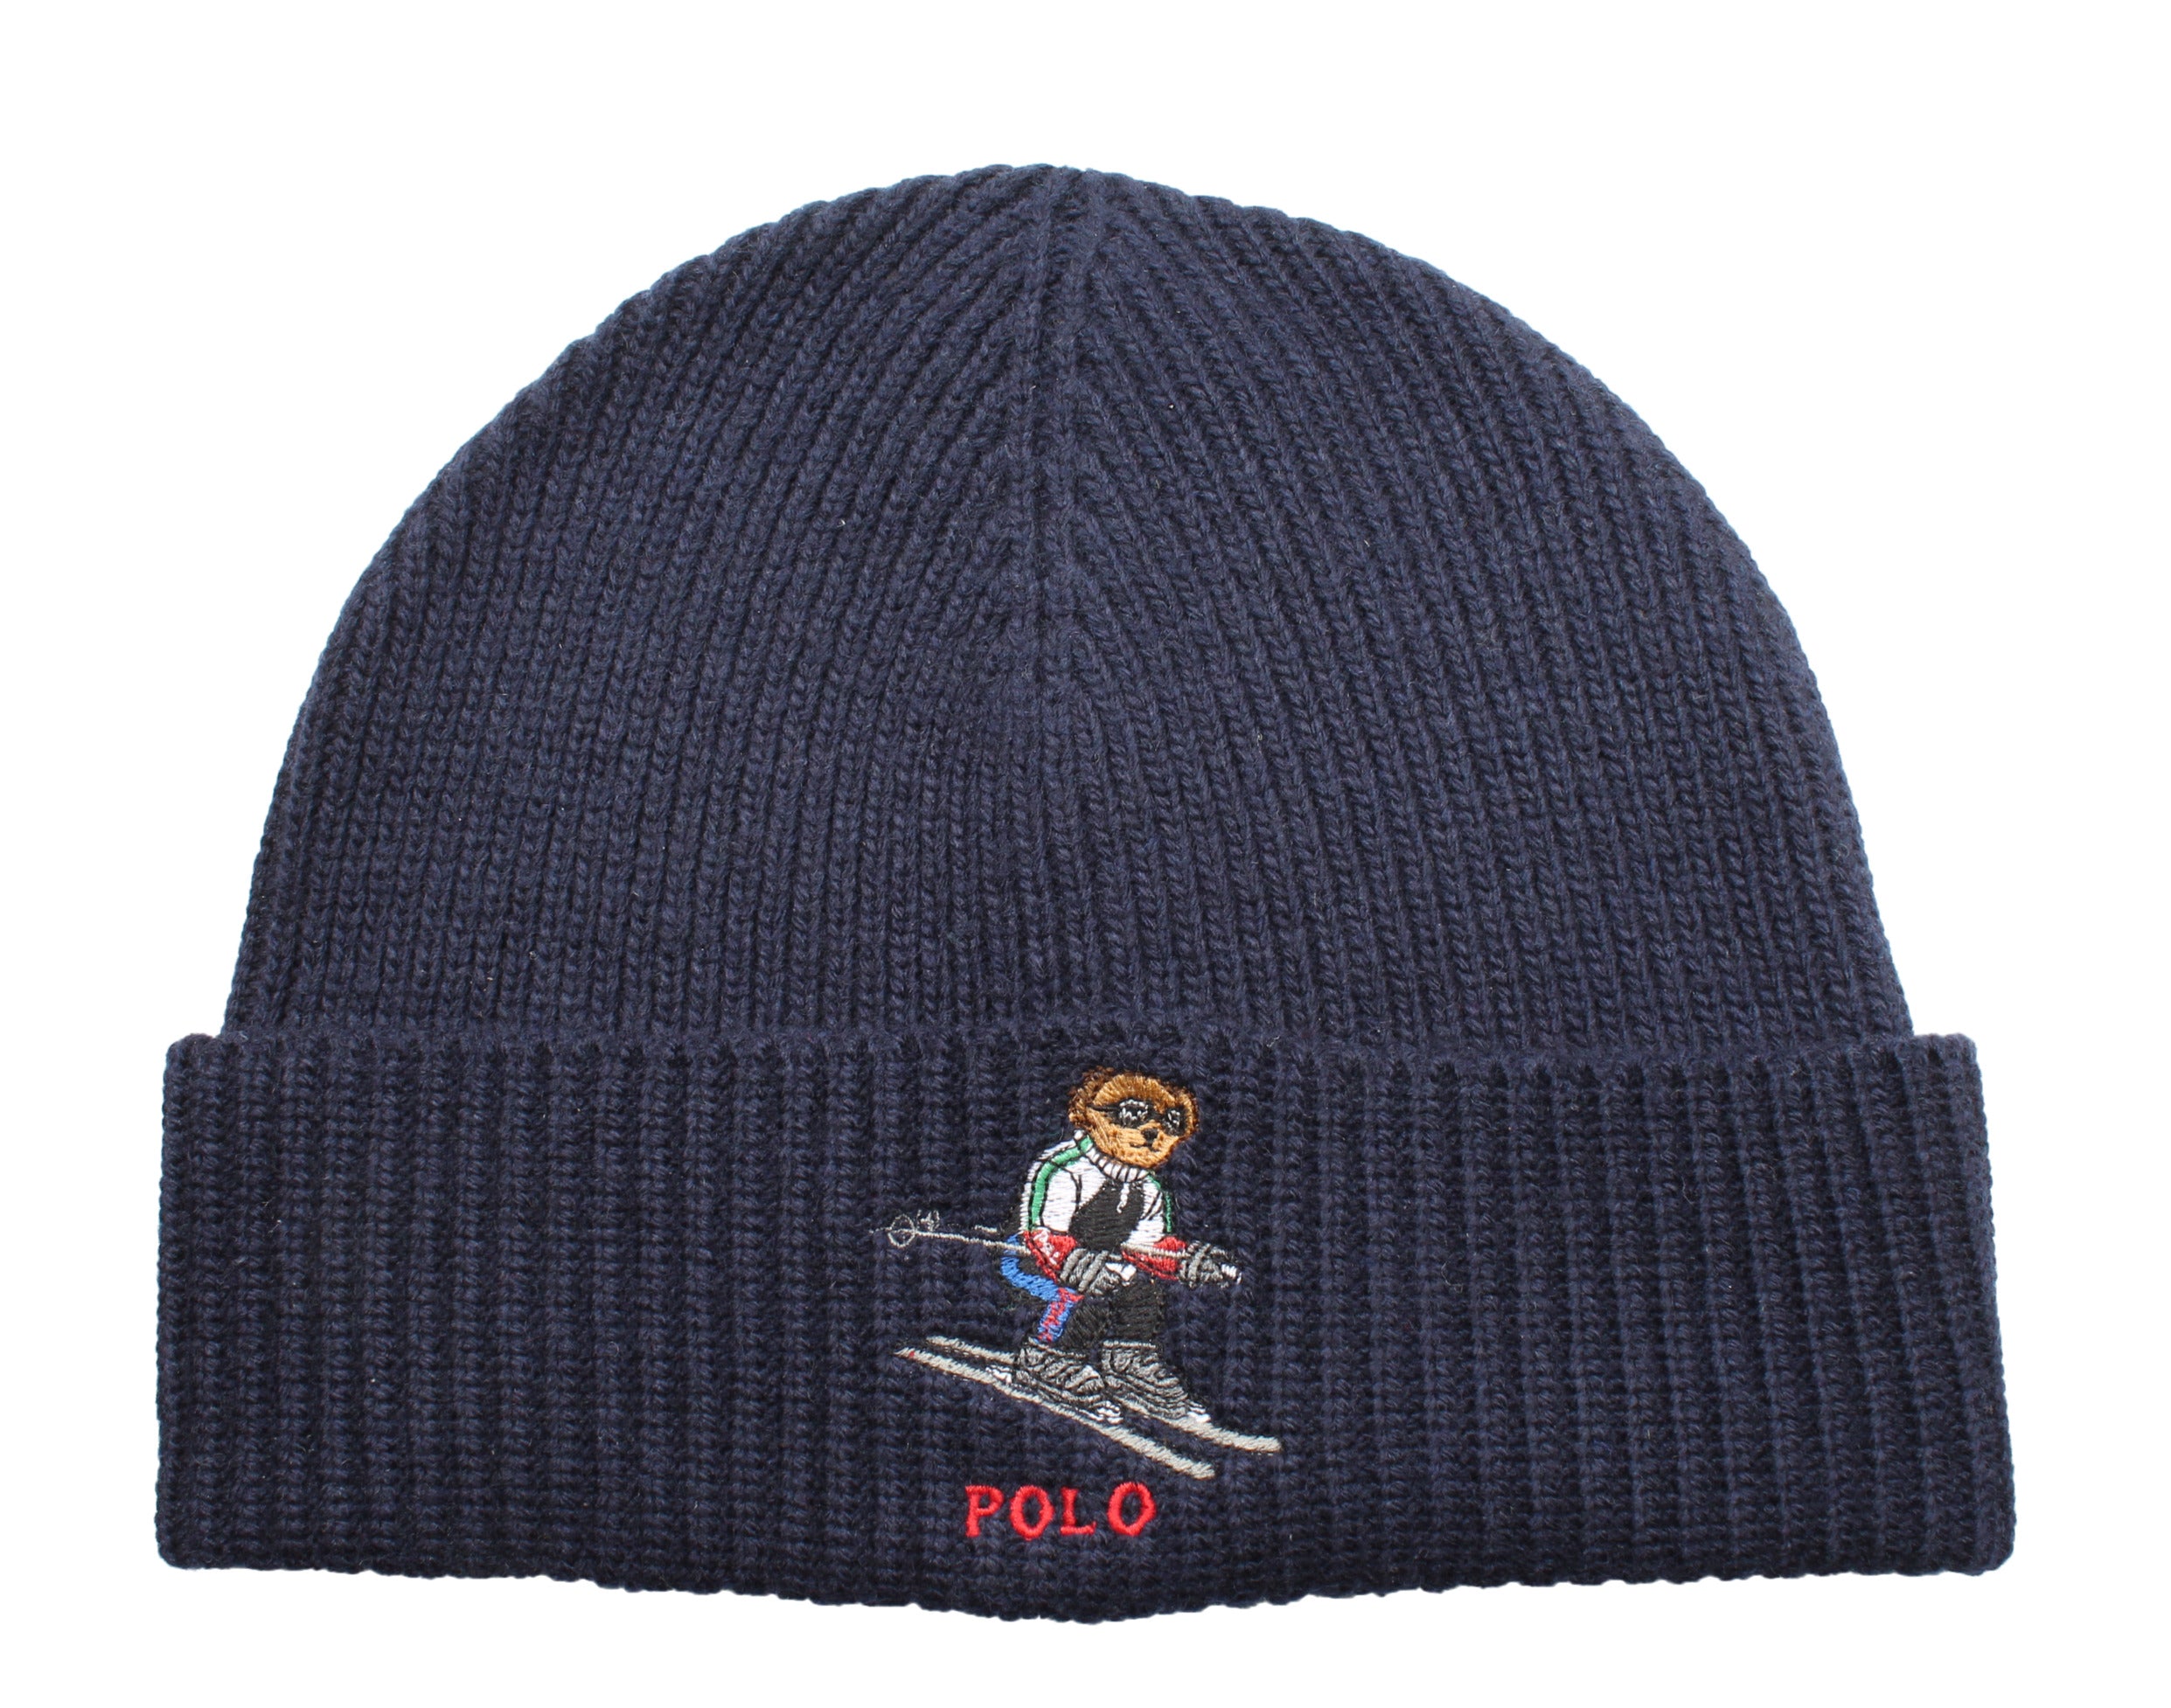 Polo Ralph Lauren Women's Knit Beret Hat Beanie Navy Blue Winter